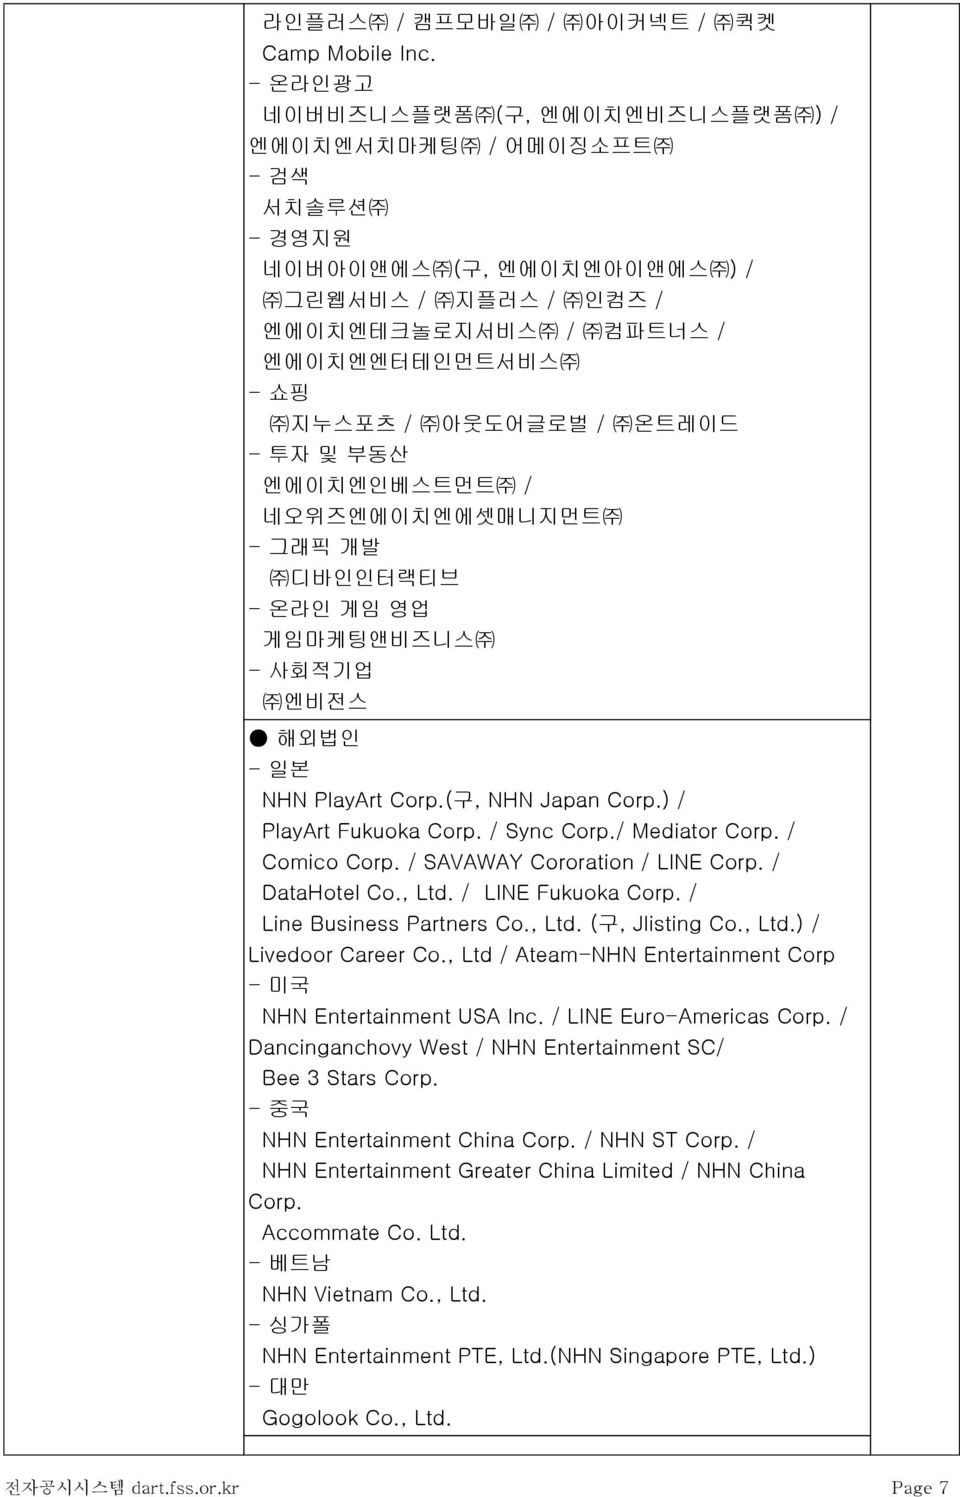 투자 및 부동산 엔에이치엔인베스트먼트 / 네오위즈엔에이치엔에셋매니지먼트 - 그래픽 개발 디바인인터랙티브 - 온라인 게임 영업 게임마케팅앤비즈니스 - 사회적기업 엔비전스 해외법인 - 일본 NHN PlayArt Corp.(구, NHN Japan Corp.) / PlayArt Fukuoka Corp. / Sync Corp./ Mediator Corp.